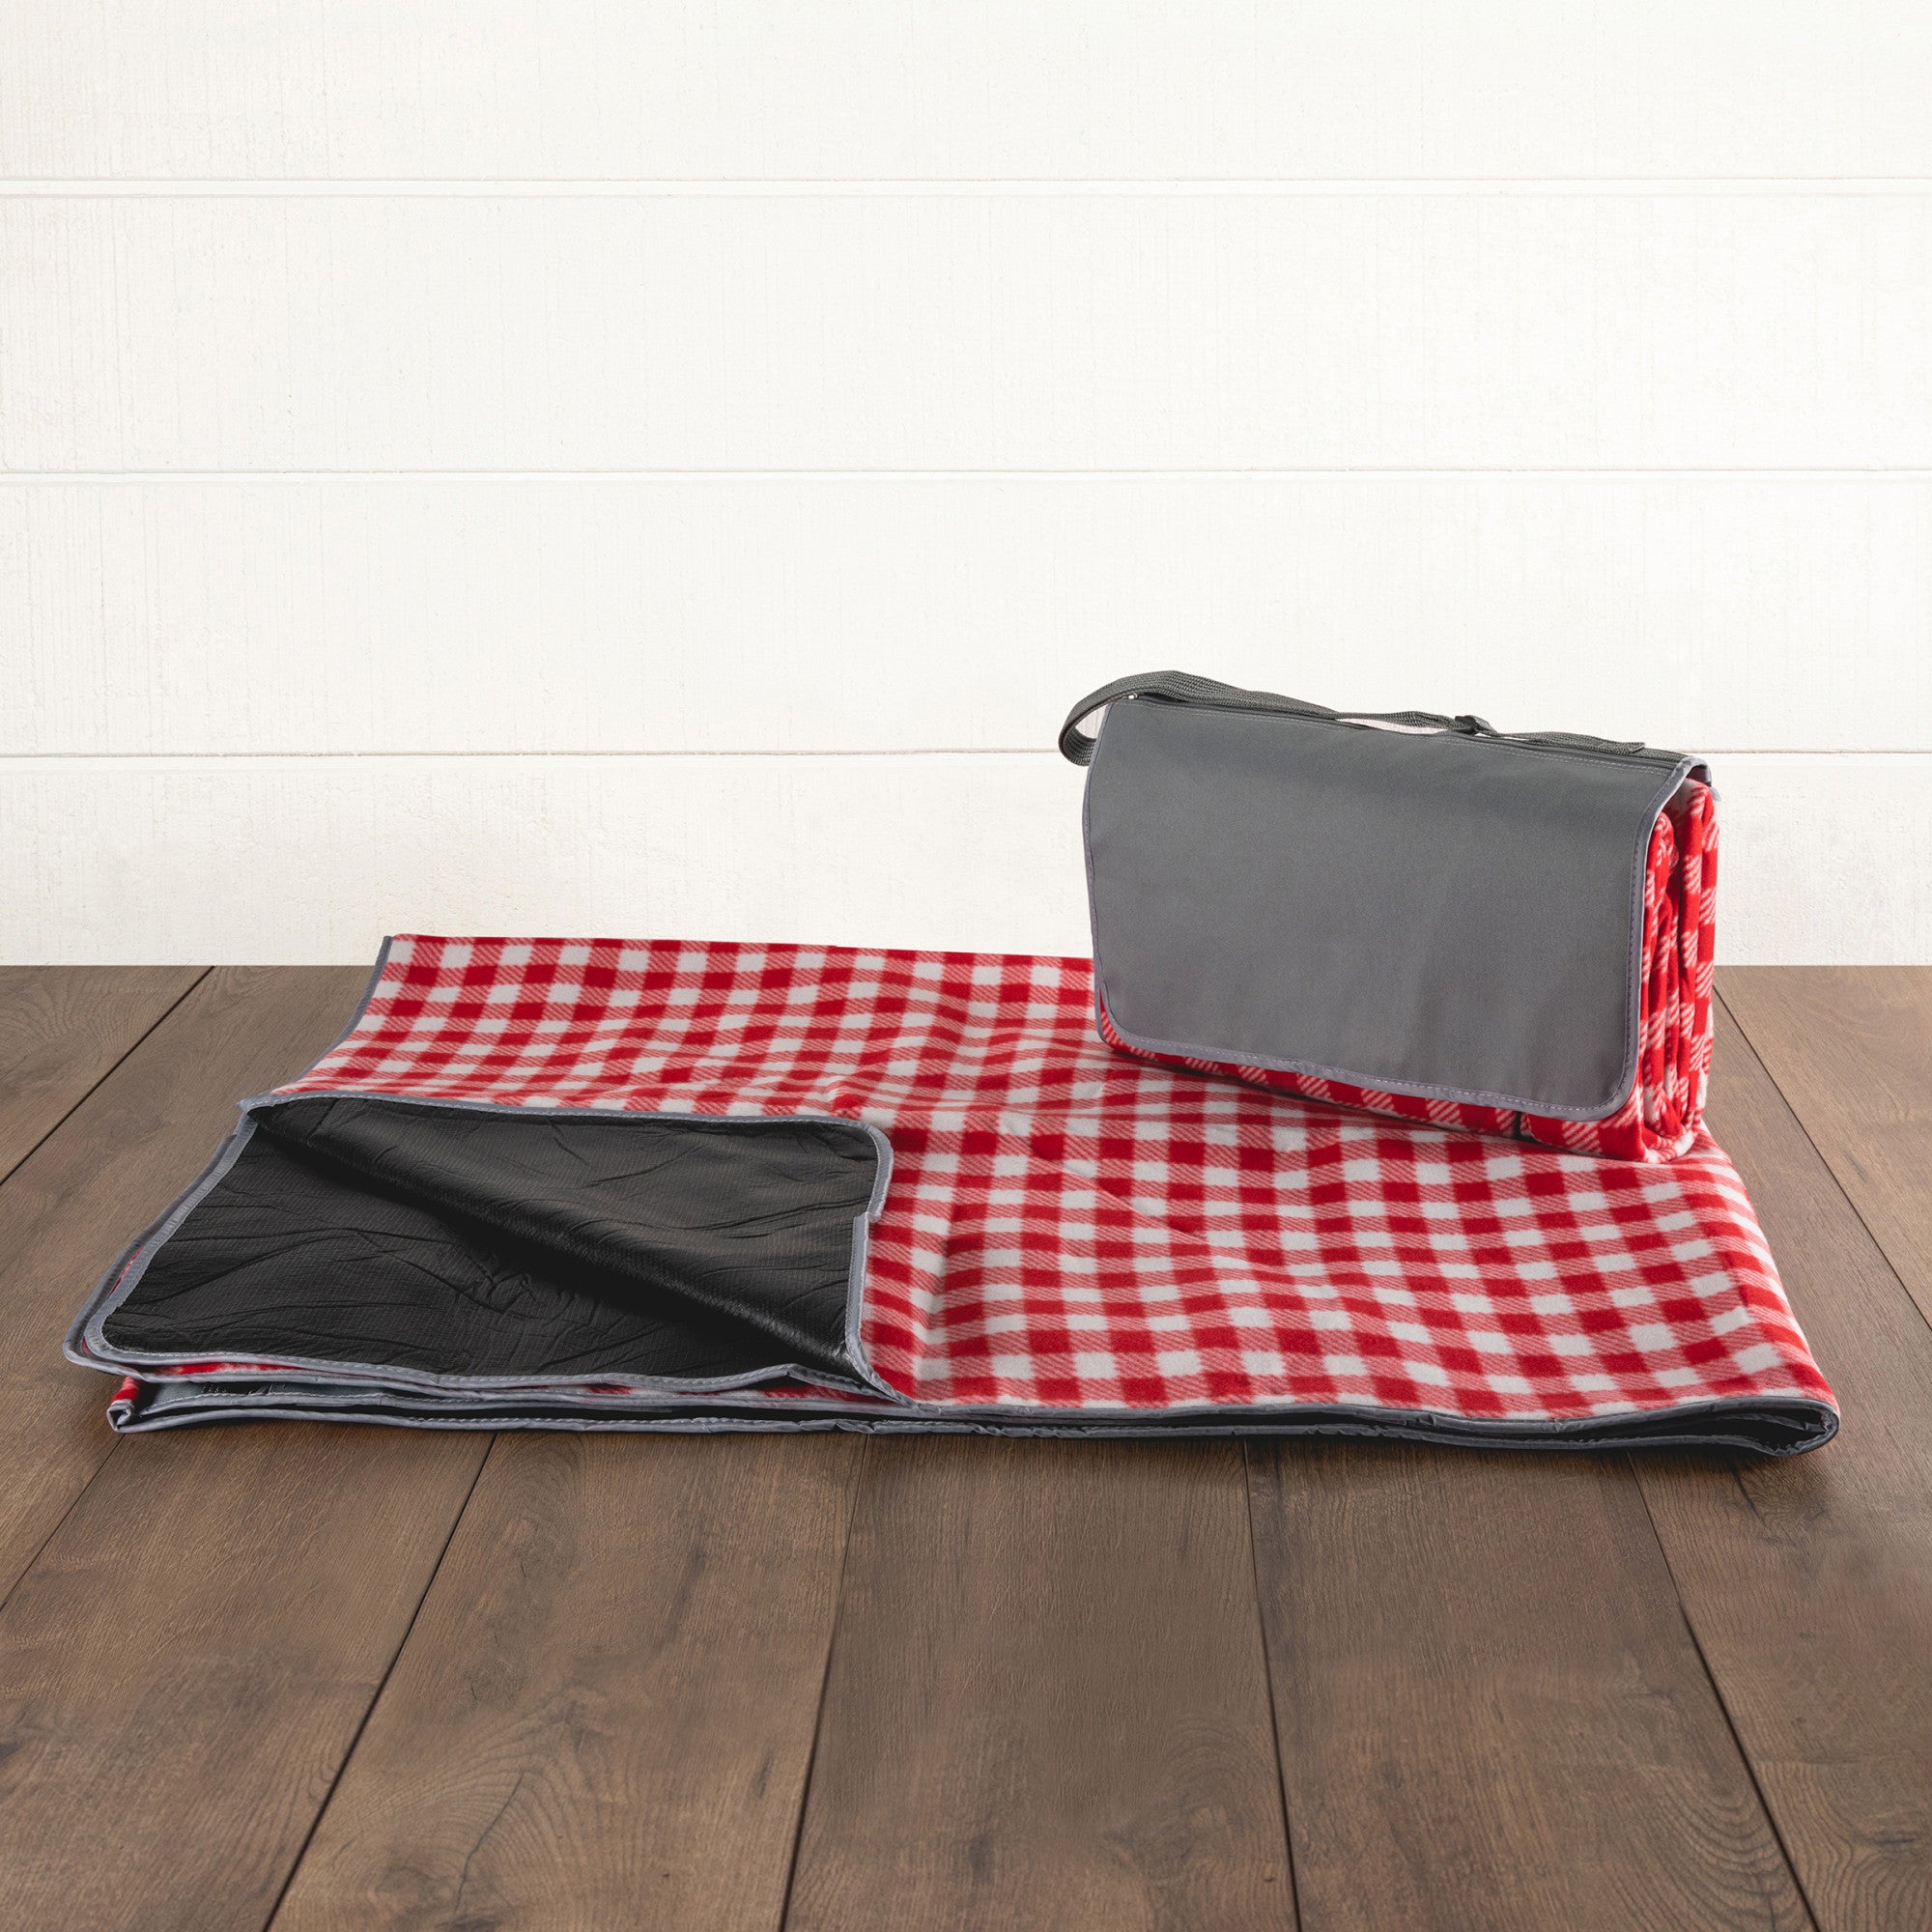 Blanket Tote XL - Versatile & Durable Outdoor Picnic Blanket